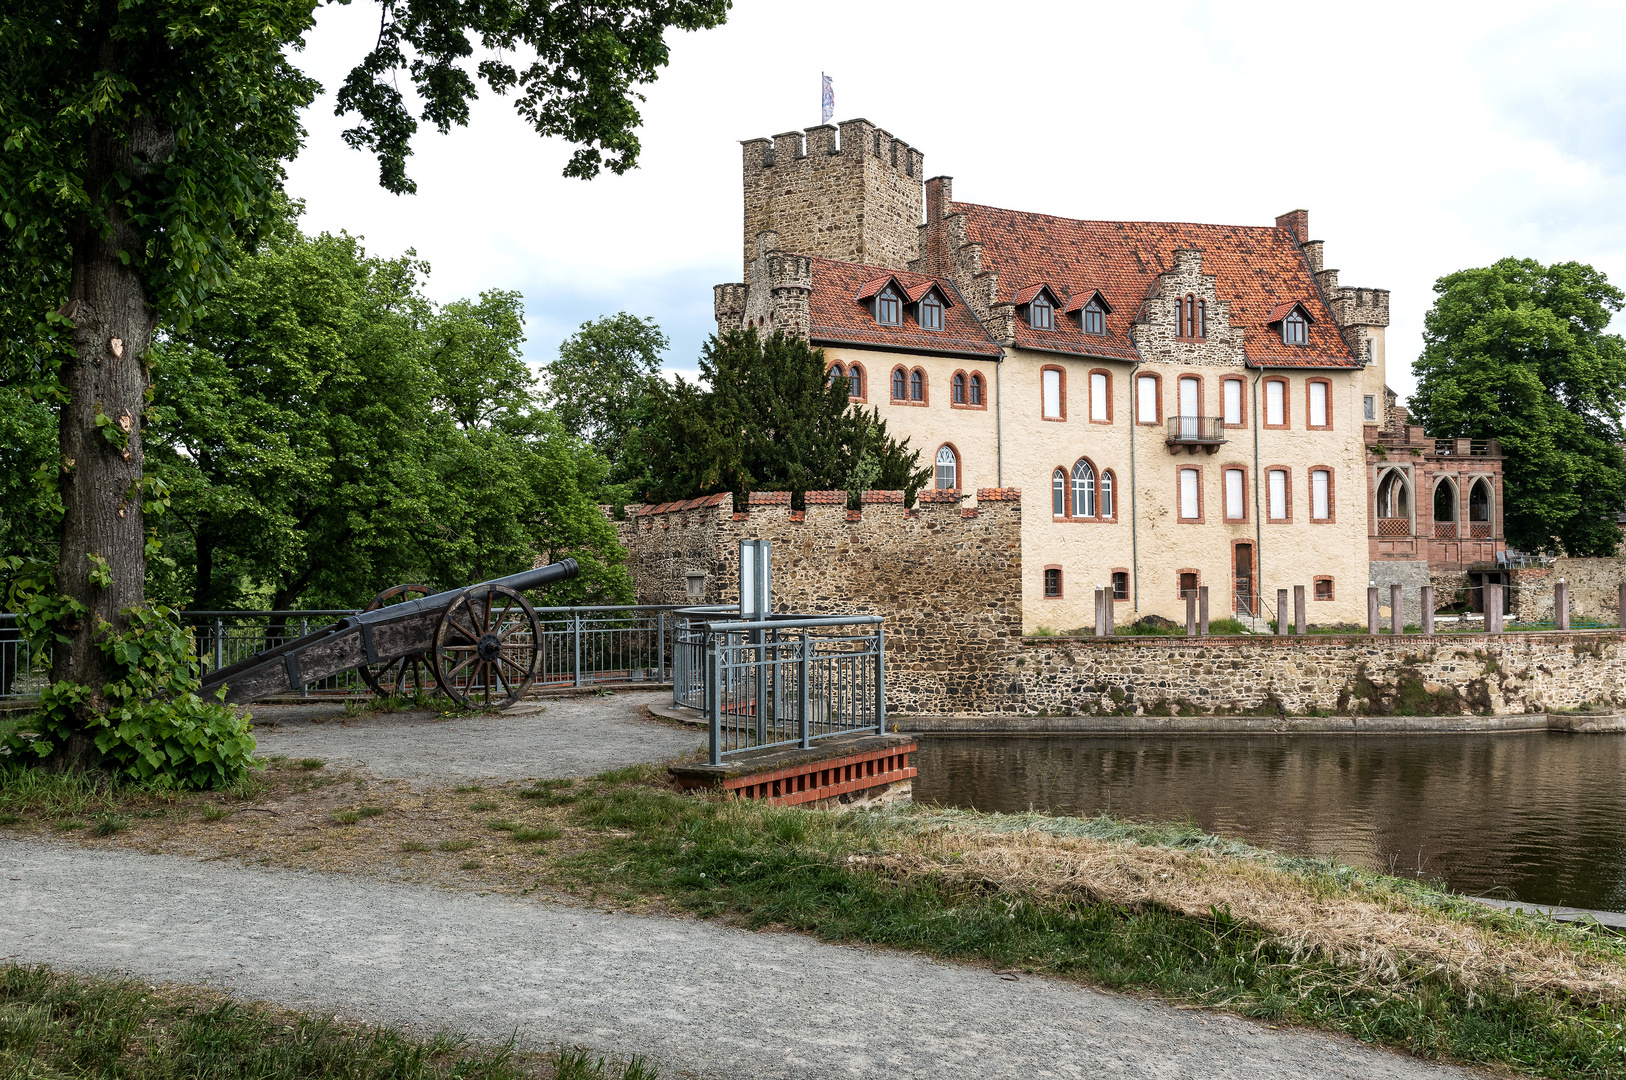 Flechtingen (1) Das Wasserschloss.